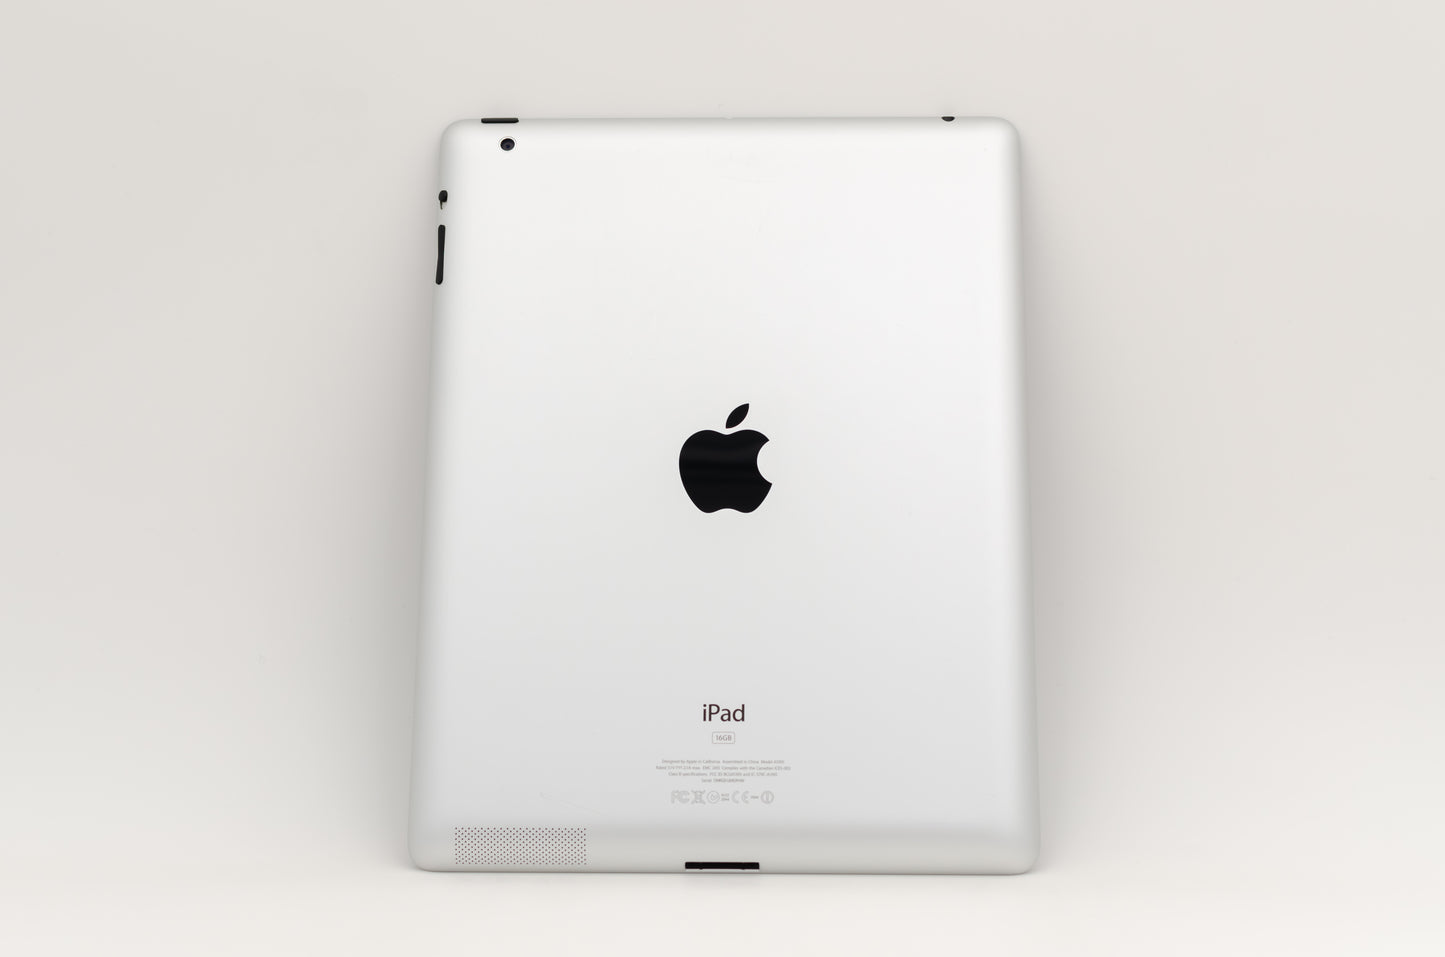 apple-2012-9.7-inch-ipad-2-a1397-silver/black-2